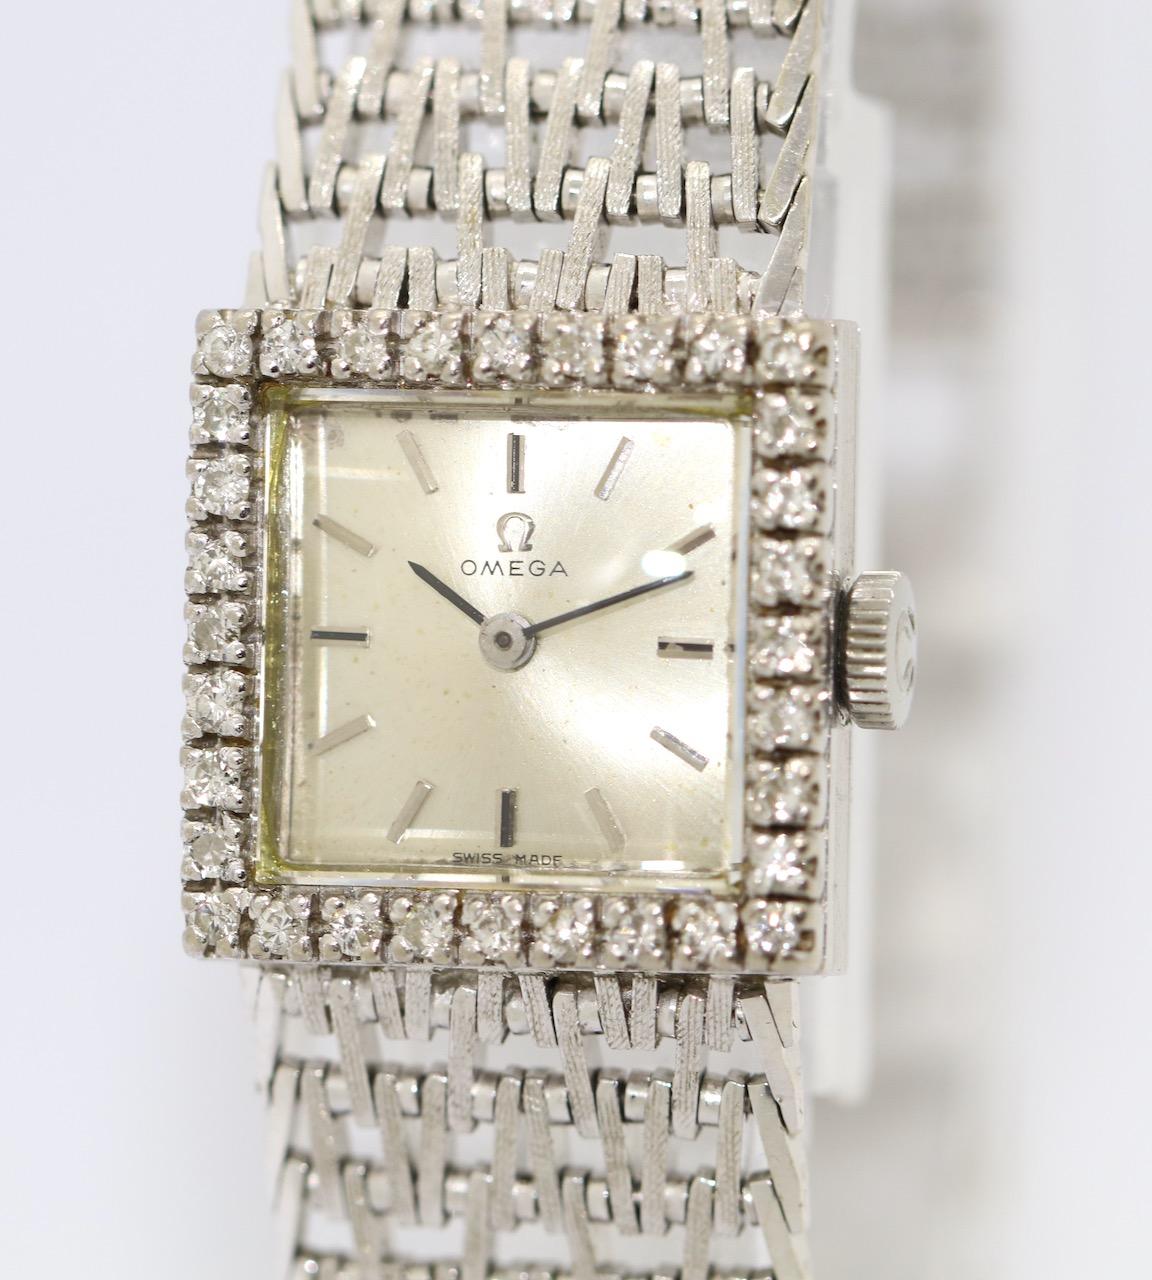 Montre-bracelet Vintage Omega Lady en or blanc 18 carats. Serti de diamants.

Mouvement mécanique à remontage manuel. 

Certificat d'authenticité inclus.